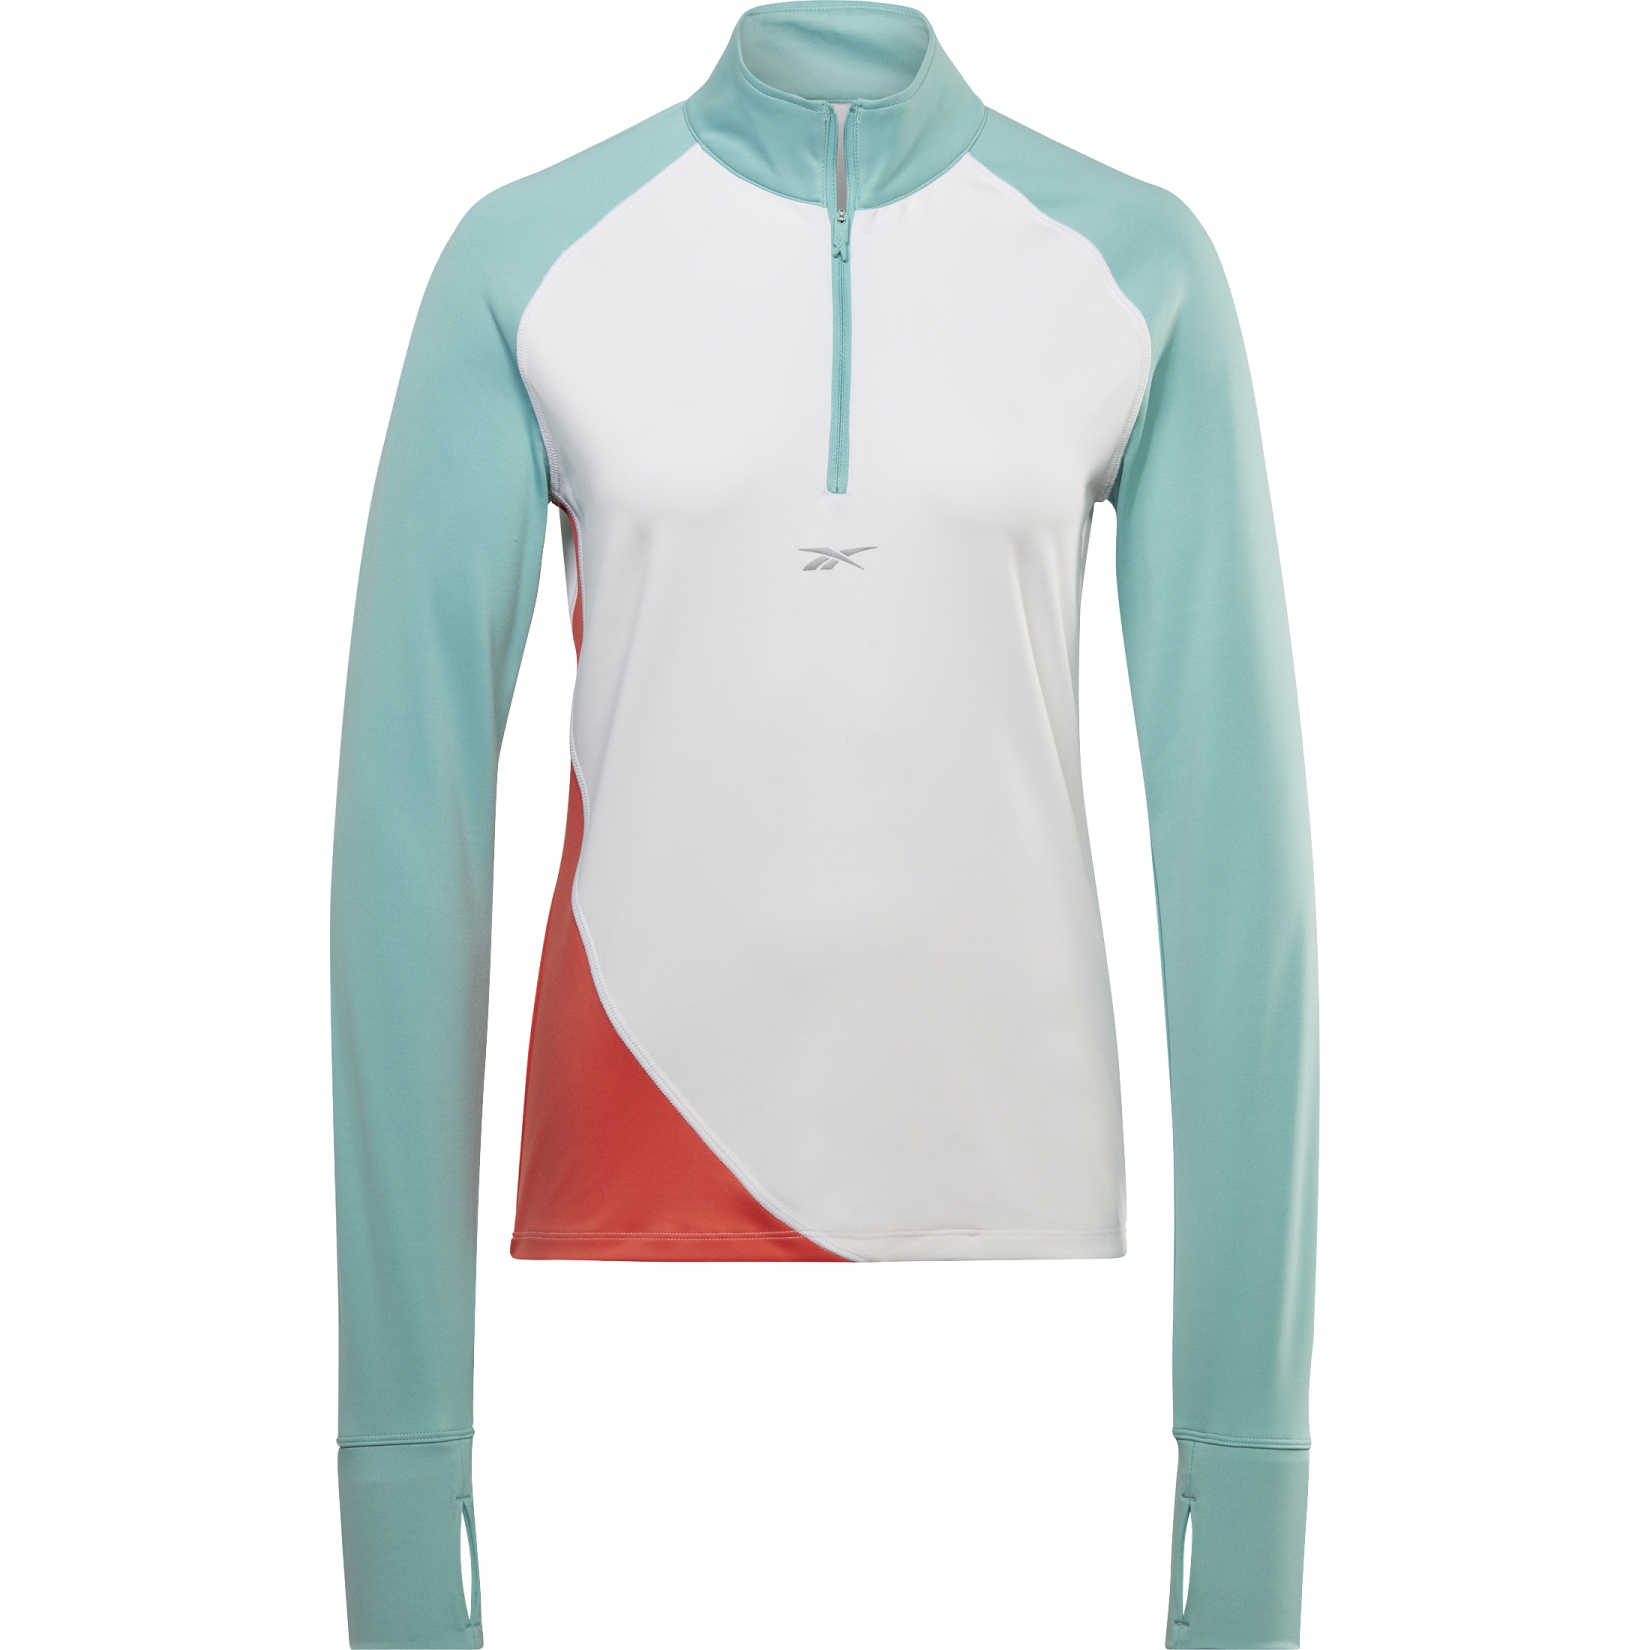 Produktbild von Reebok Running Quarter-Zip Damen Sweatshirt - weiß